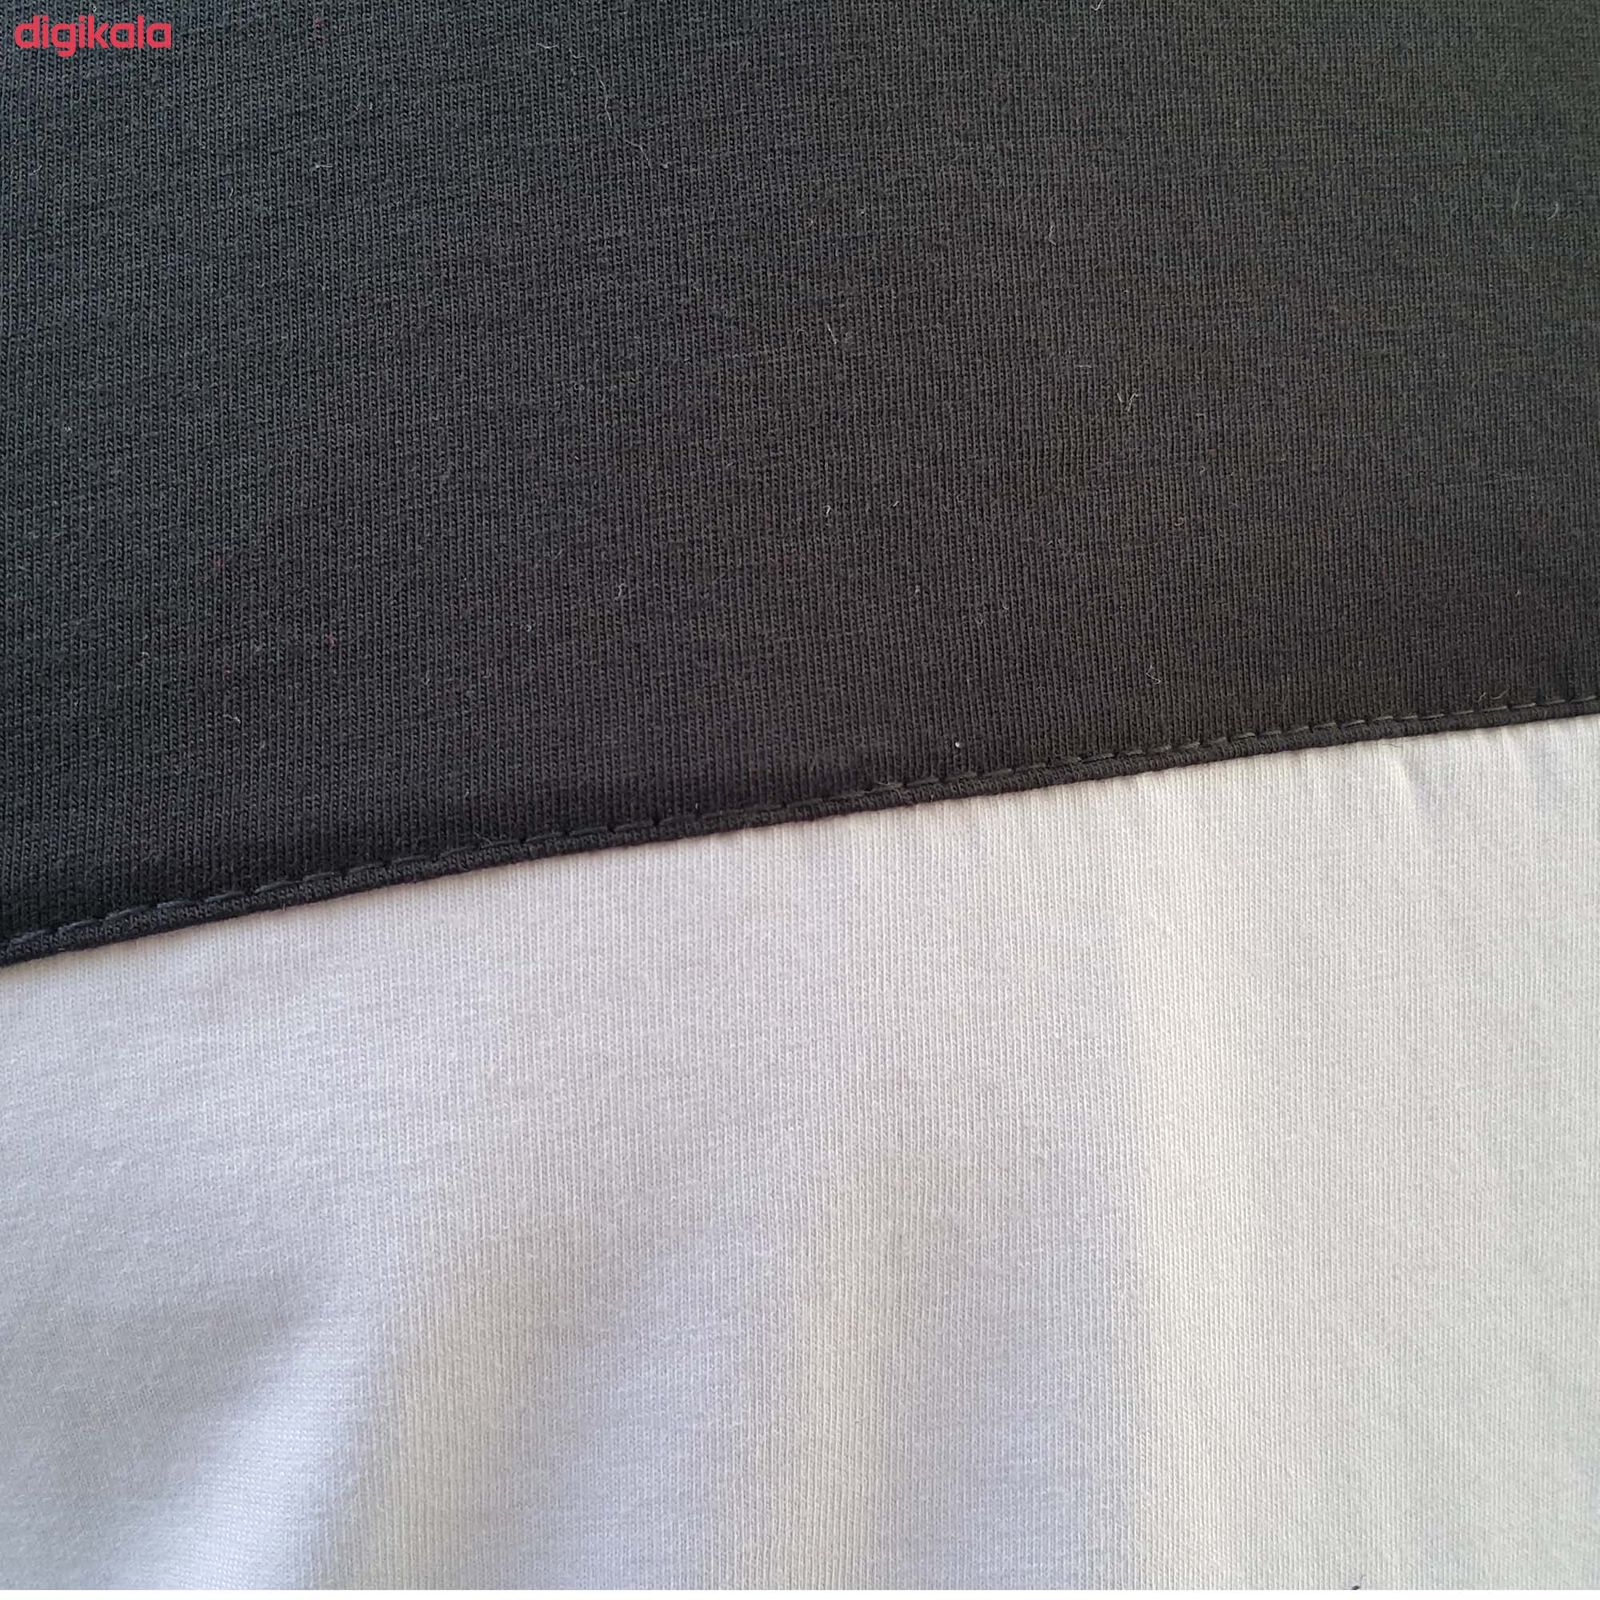  تی شرت آستین کوتاه مردانه طرح آژاکس کد A264Wرنگ سفید